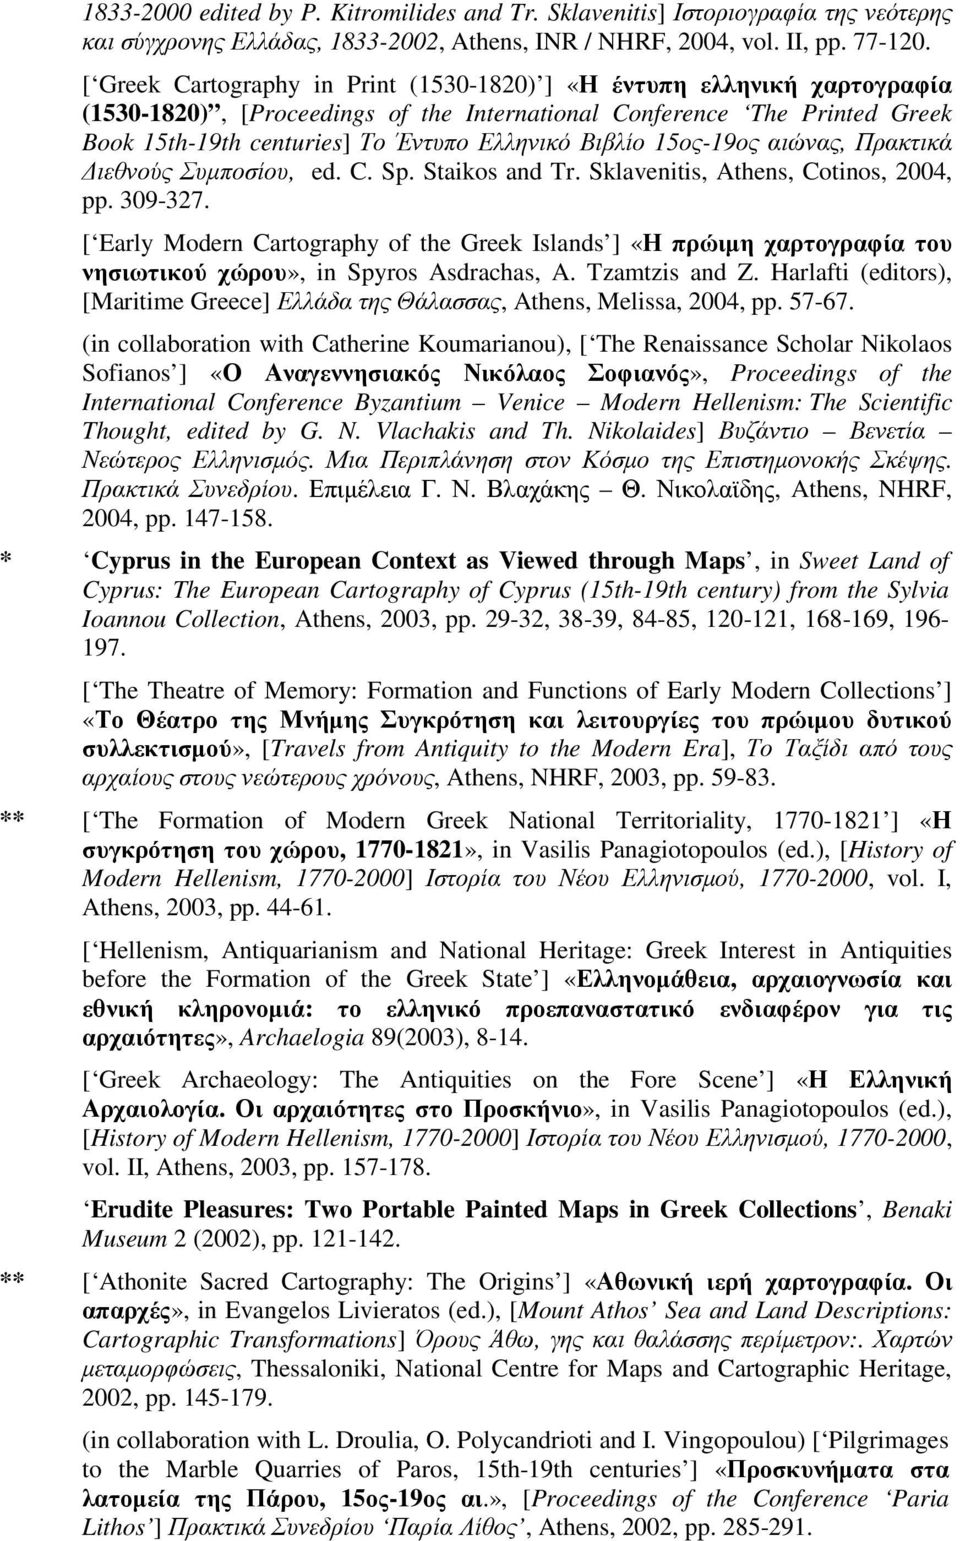 Βιβλίο 15ος-19ος αιώνας, Πρακτικά ιεθνούς Συµποσίου, ed. C. Sp. Staikos and Tr. Sklavenitis, Athens, Cotinos, 2004, pp. 309-327.